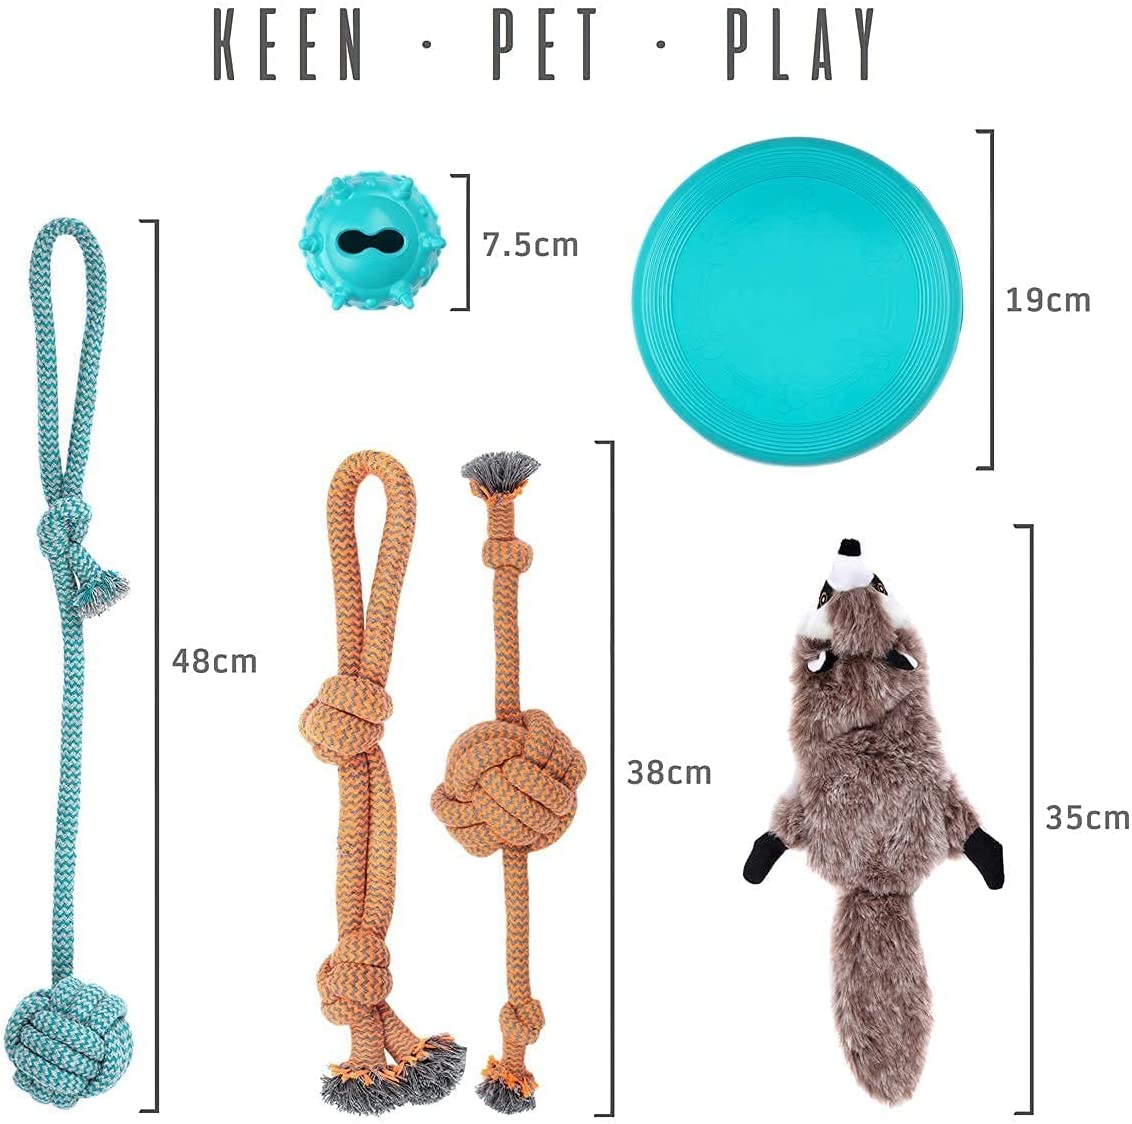 Keen.Pet.Play Brinquedos para cachorros